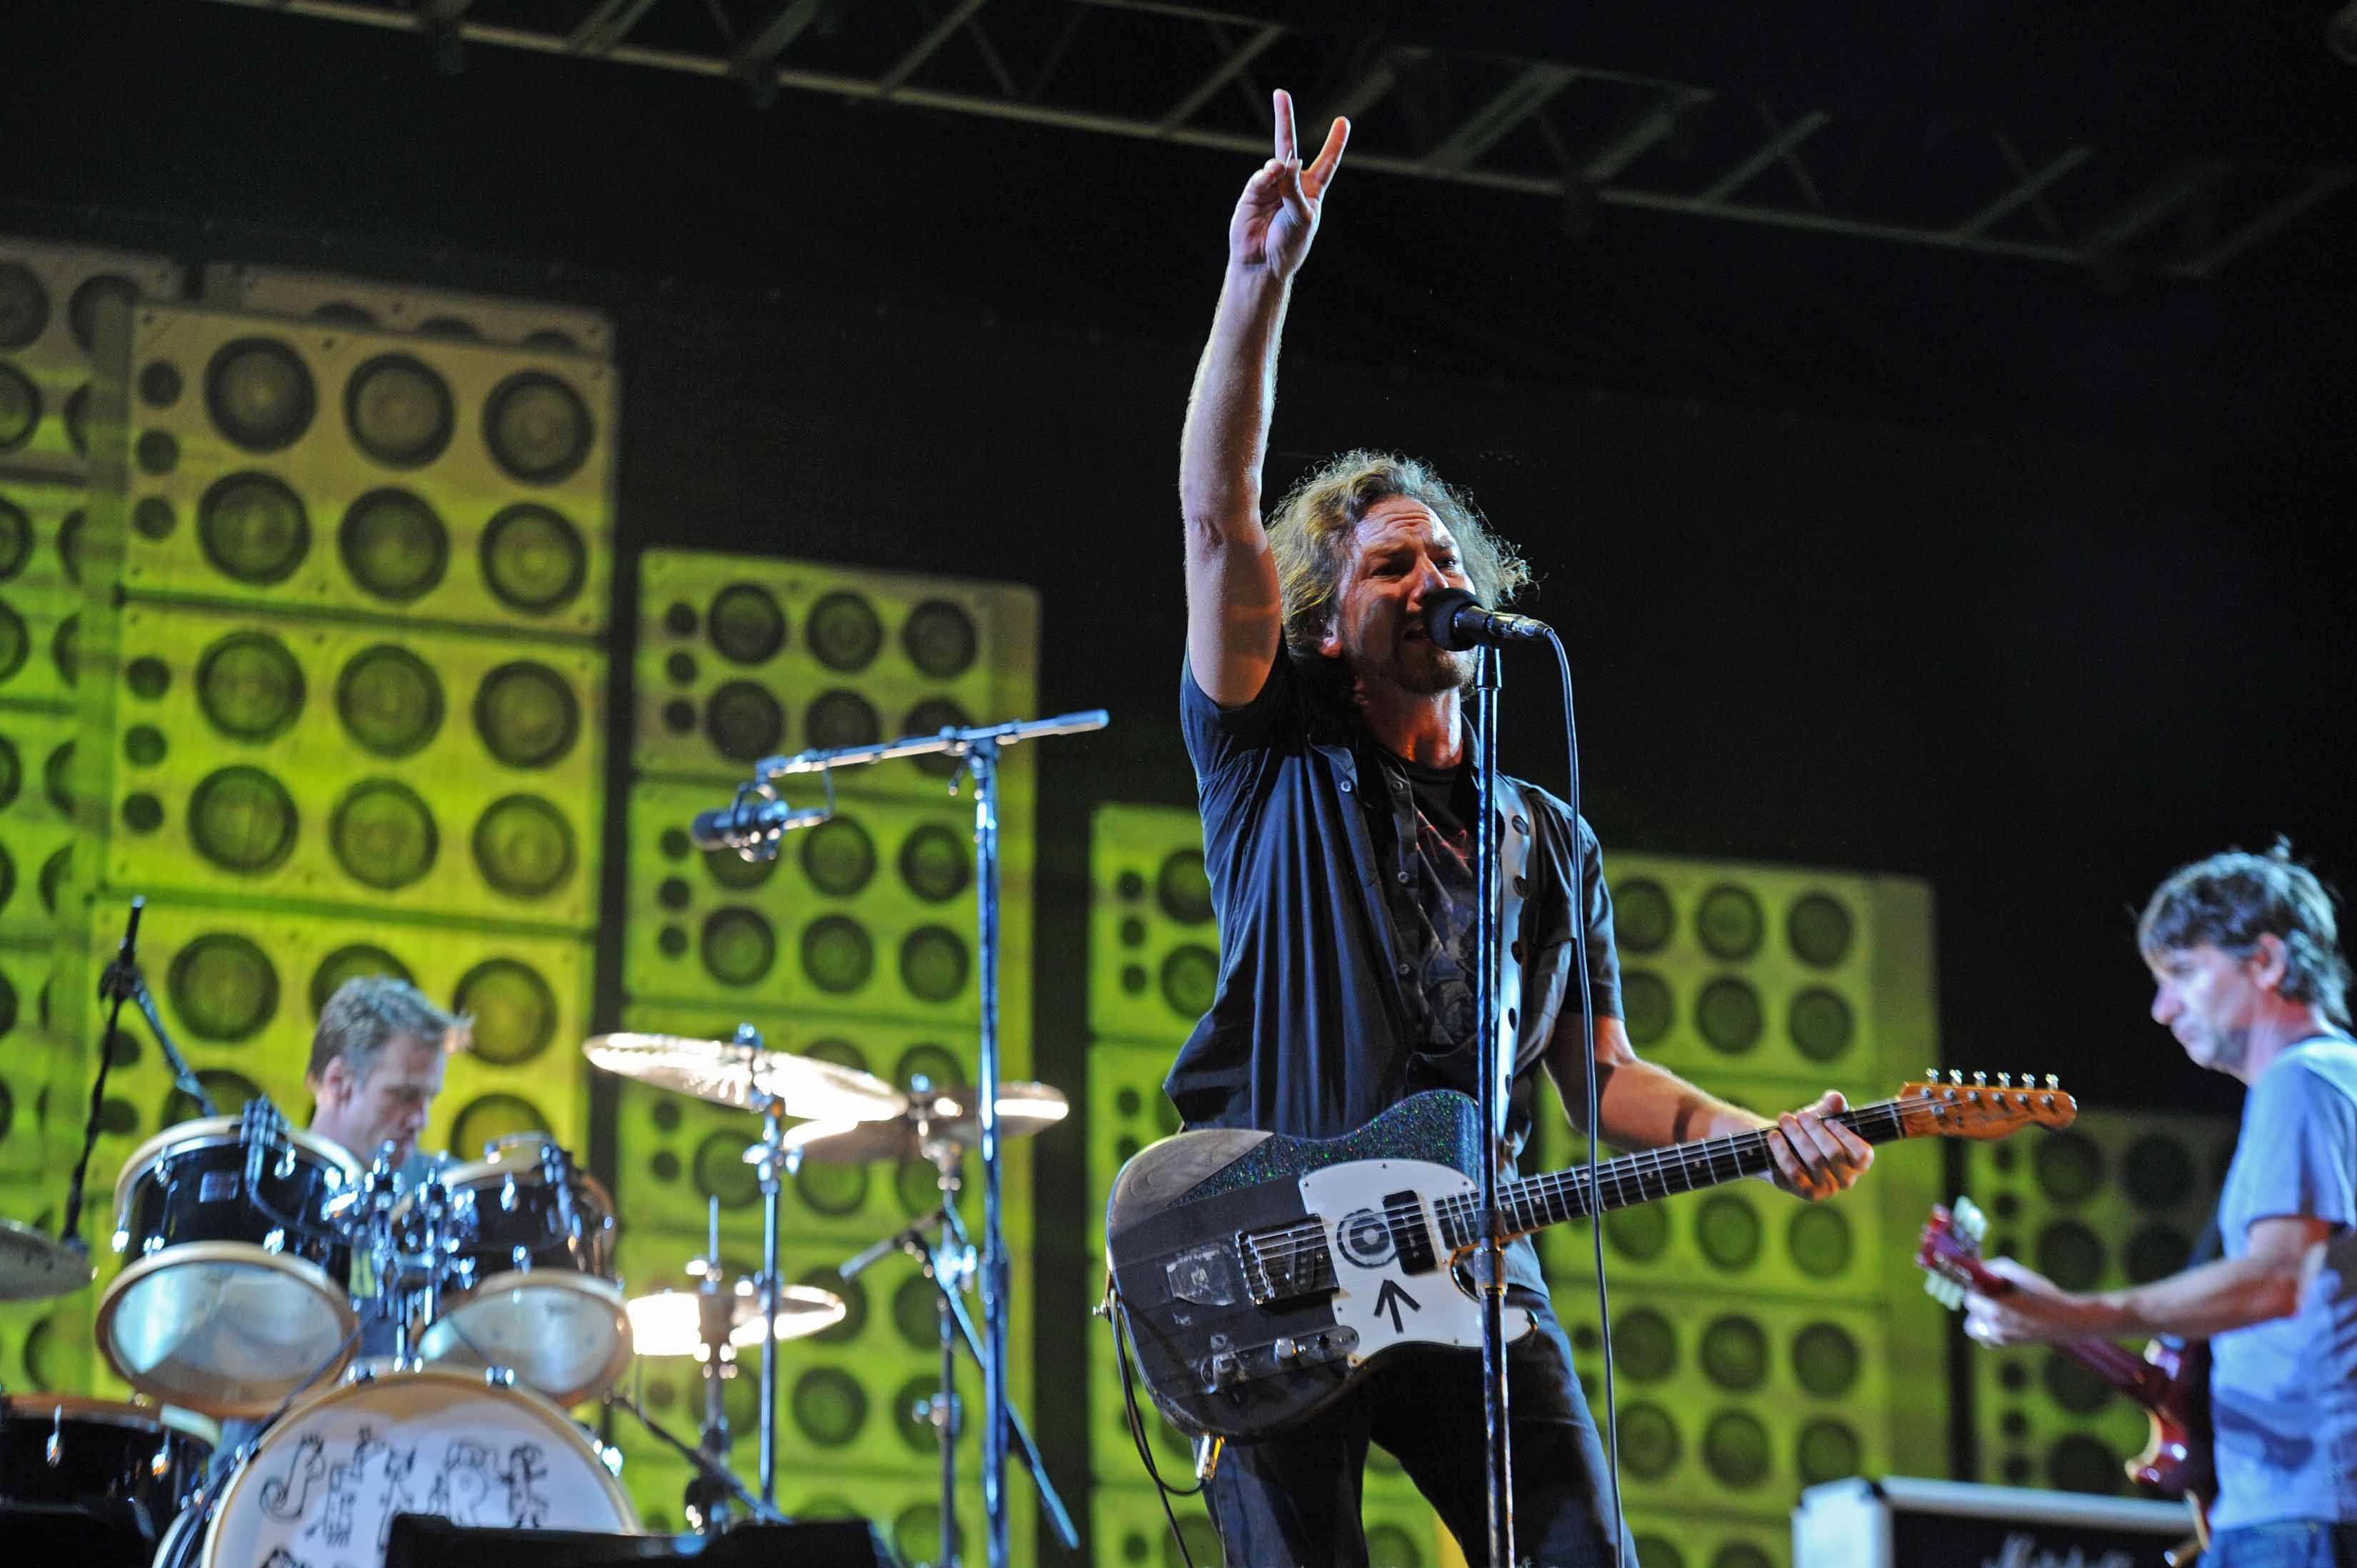 Eddie Veder y Pearl Jam solo han tocado en concierto una vez en Costa Rica. El Ministerio de Economía Industria y Comercio ya aprobó la preventa de entradas para un posible segundo show en nuestro país.